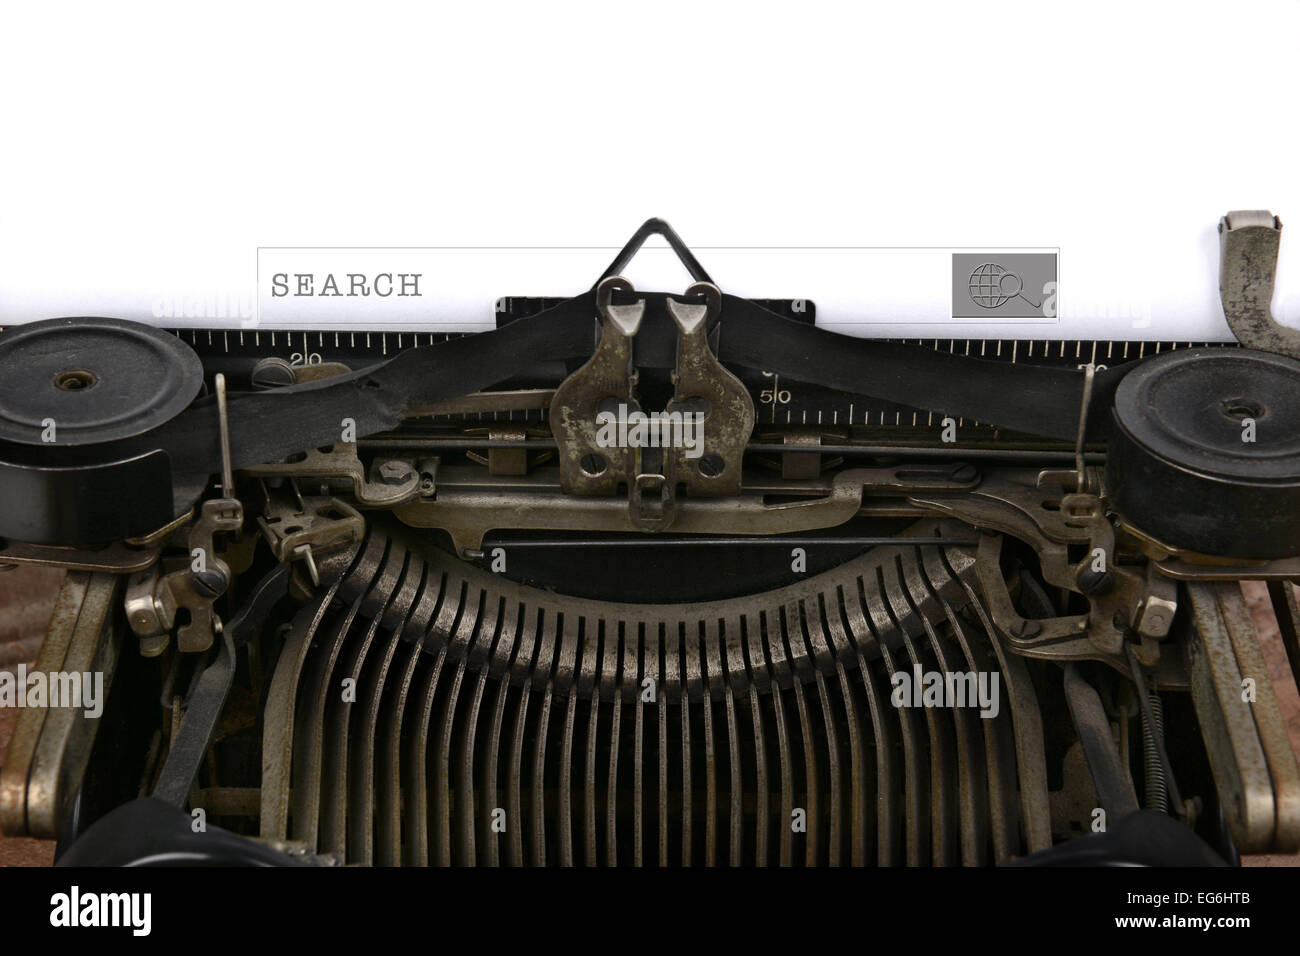 Eine altmodische Schreibmaschine mit einem Suchfeld. Nahaufnahme der Antike Maschinen Band und Wagen mit einer modernen Technologie anbraten Stockfoto